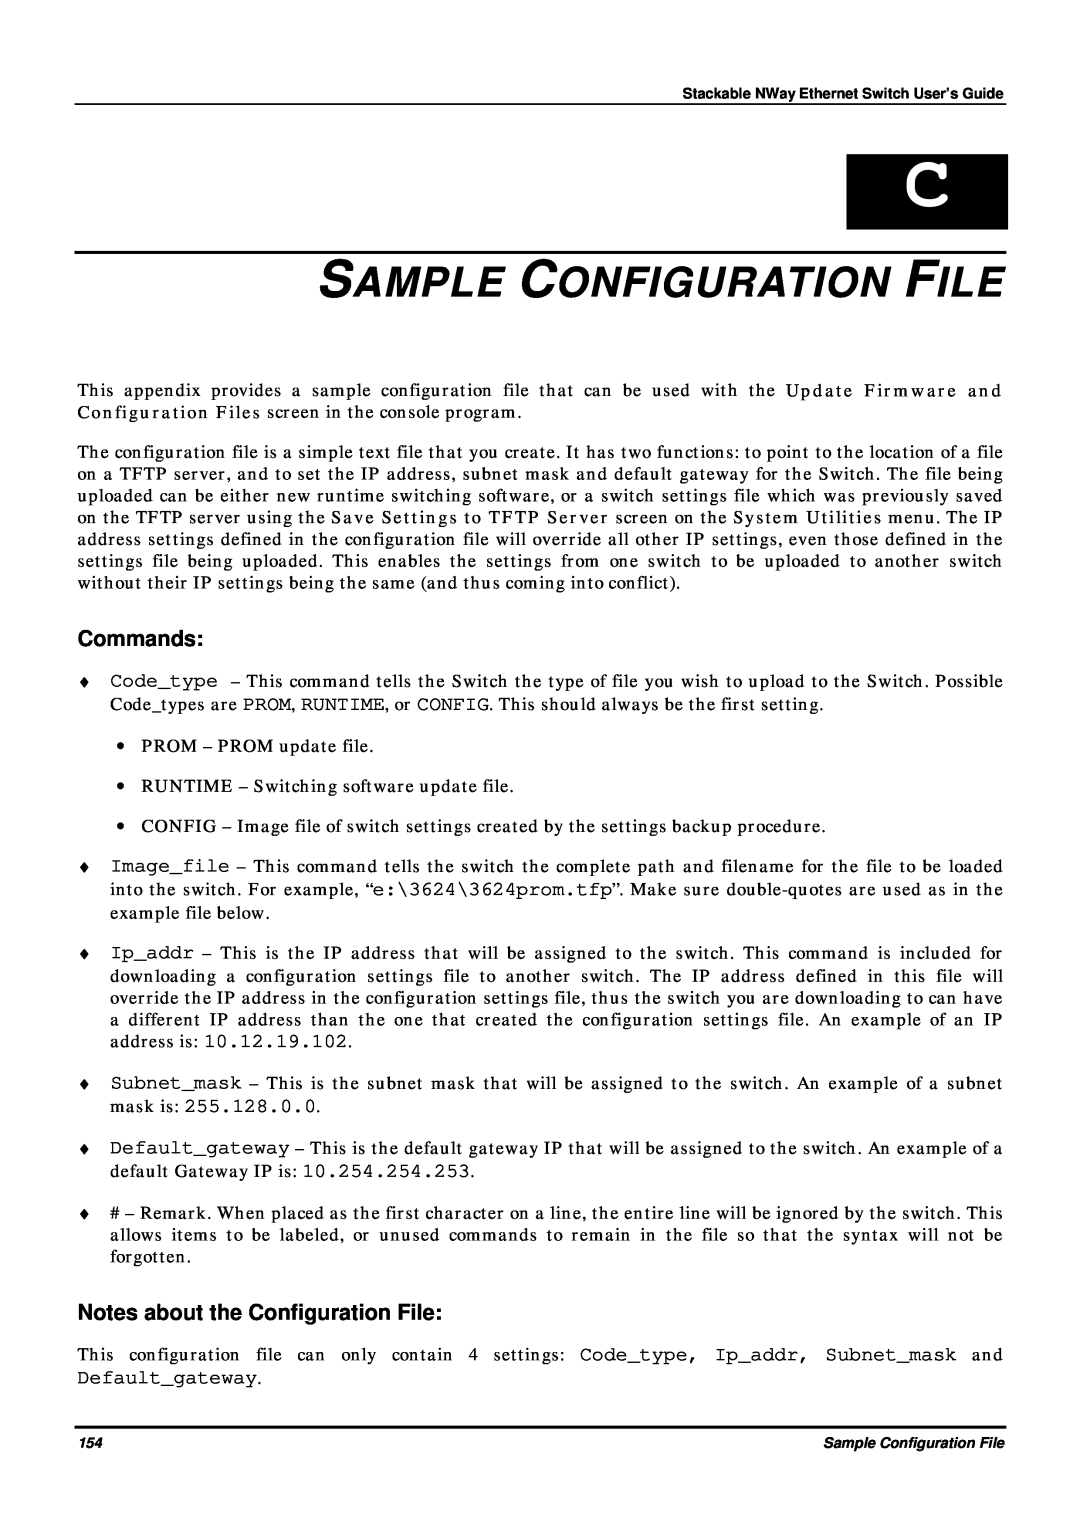 D-Link DES-3624 manual Sample Configuration File, Commands, Notes about the Configuration File, Defaultgateway 